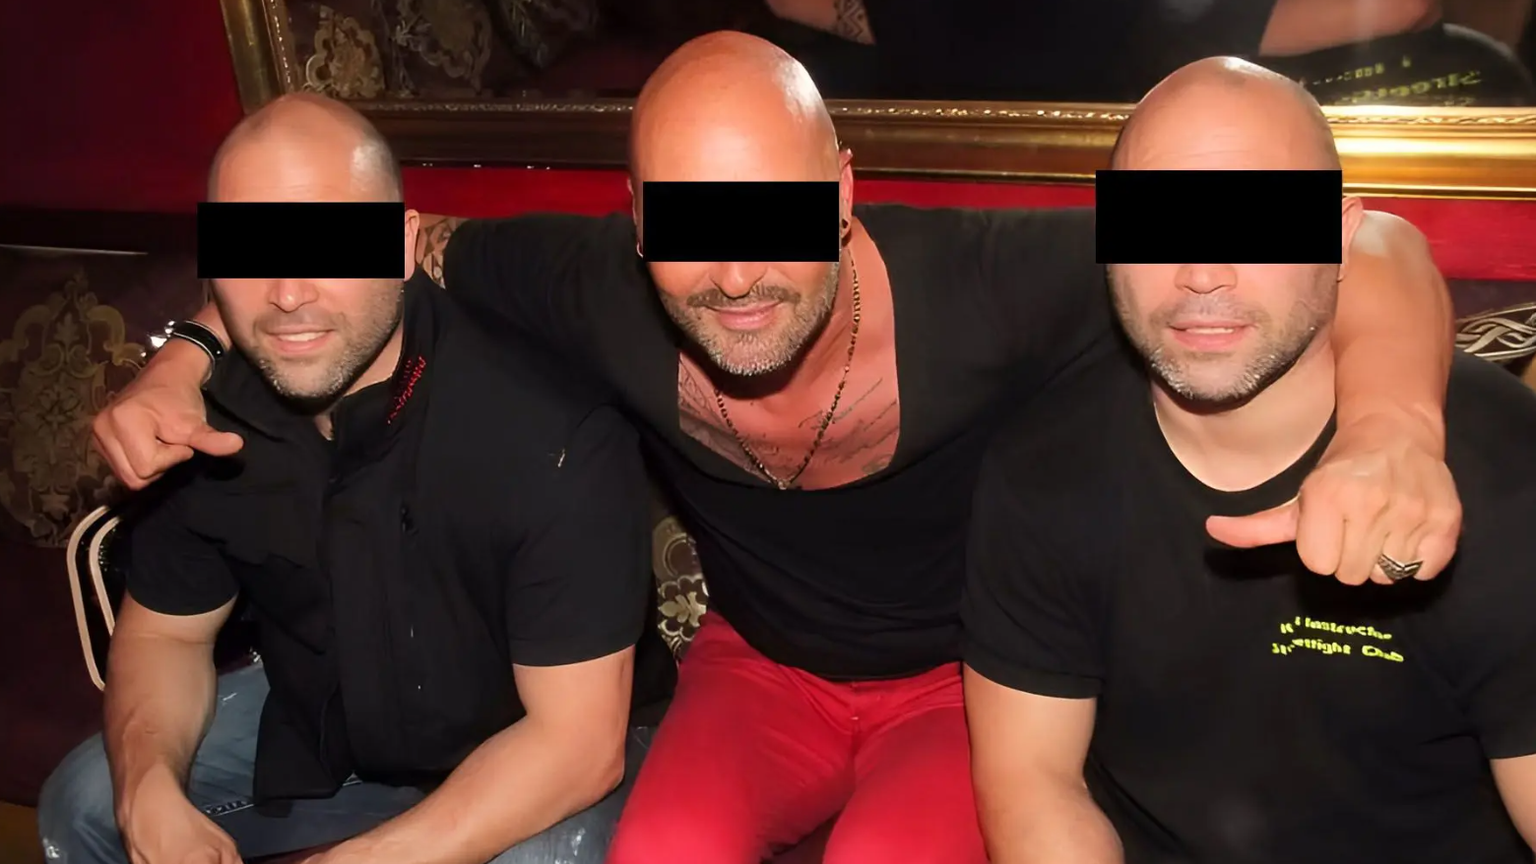 Gegen sie wird ermittelt: Die Zwillingsbrüder (ganz links und ganz rechts, in der Mitte ein unbeteiligter Partygänger).